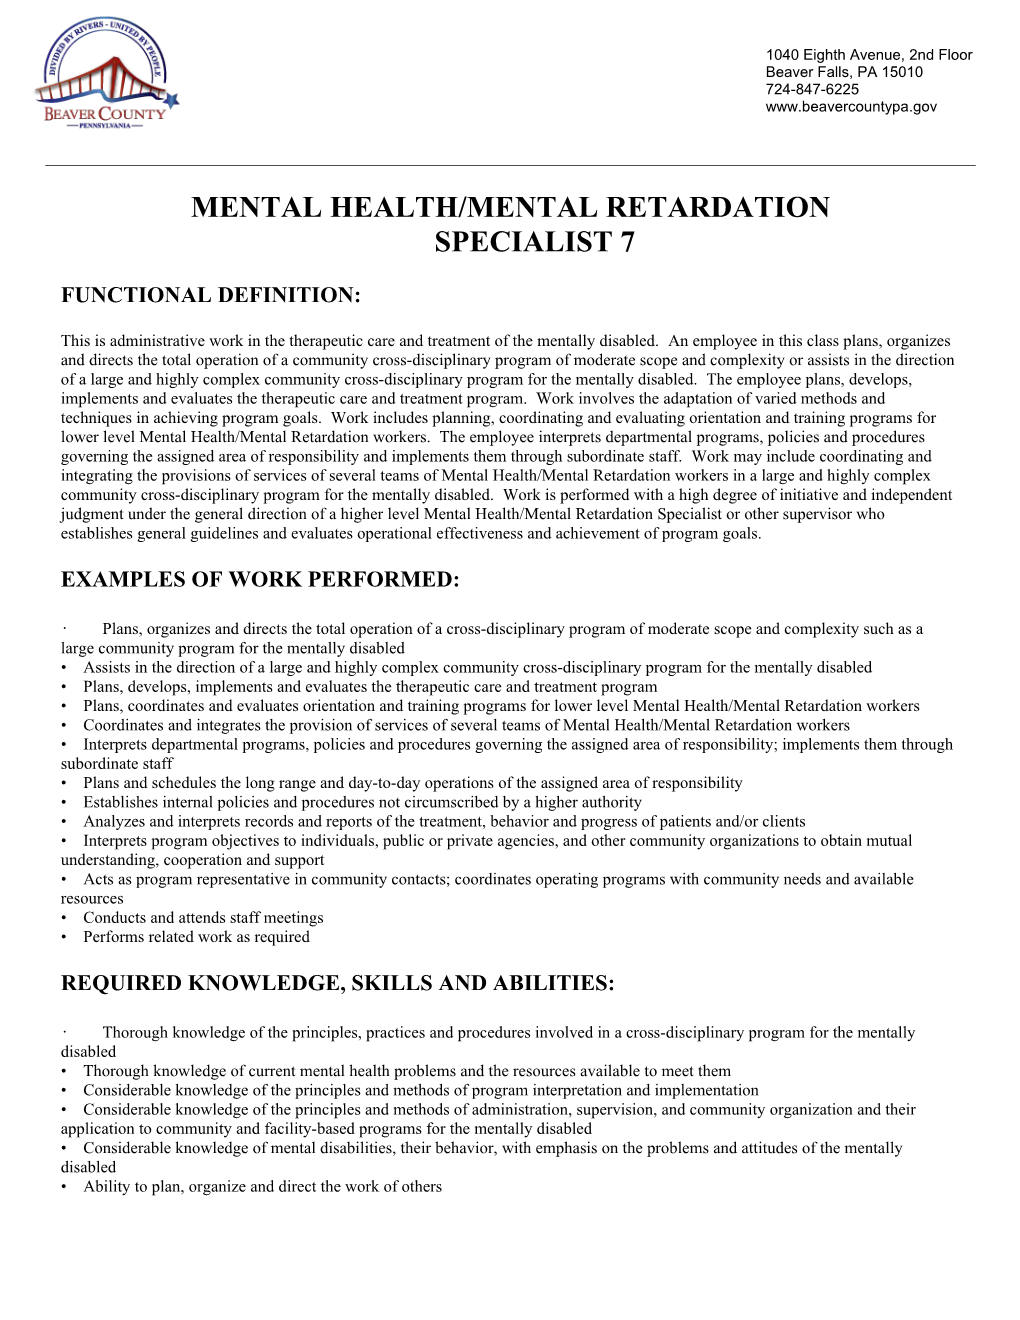 Mental Health/Mental Retardationspecialist 7